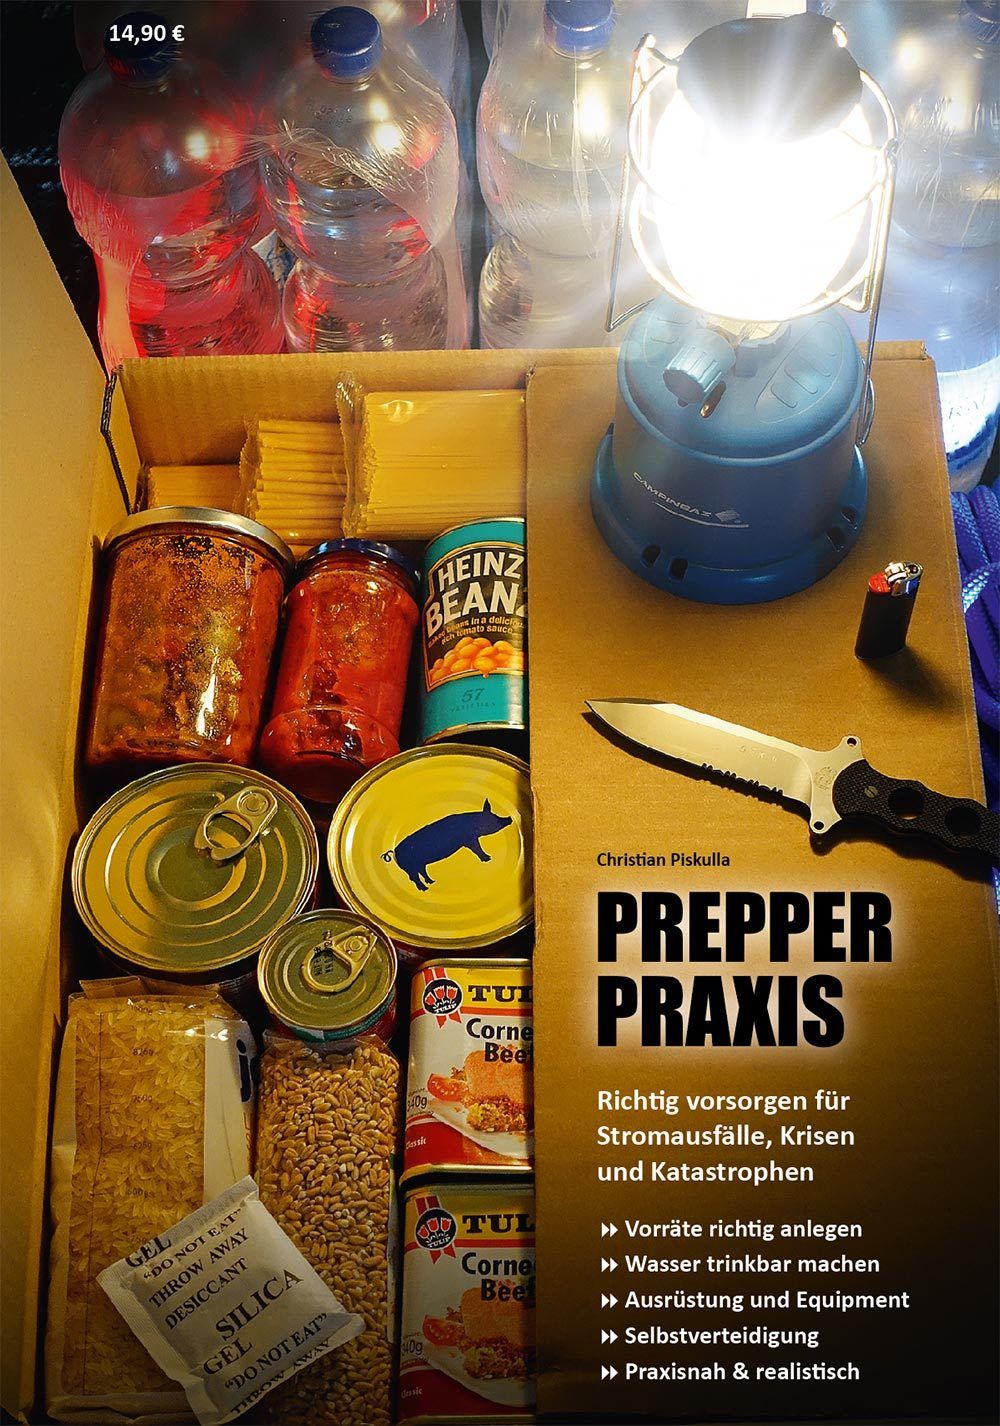 PREPPER-PRAXIS das Handbuch zur Krisenvorsorge